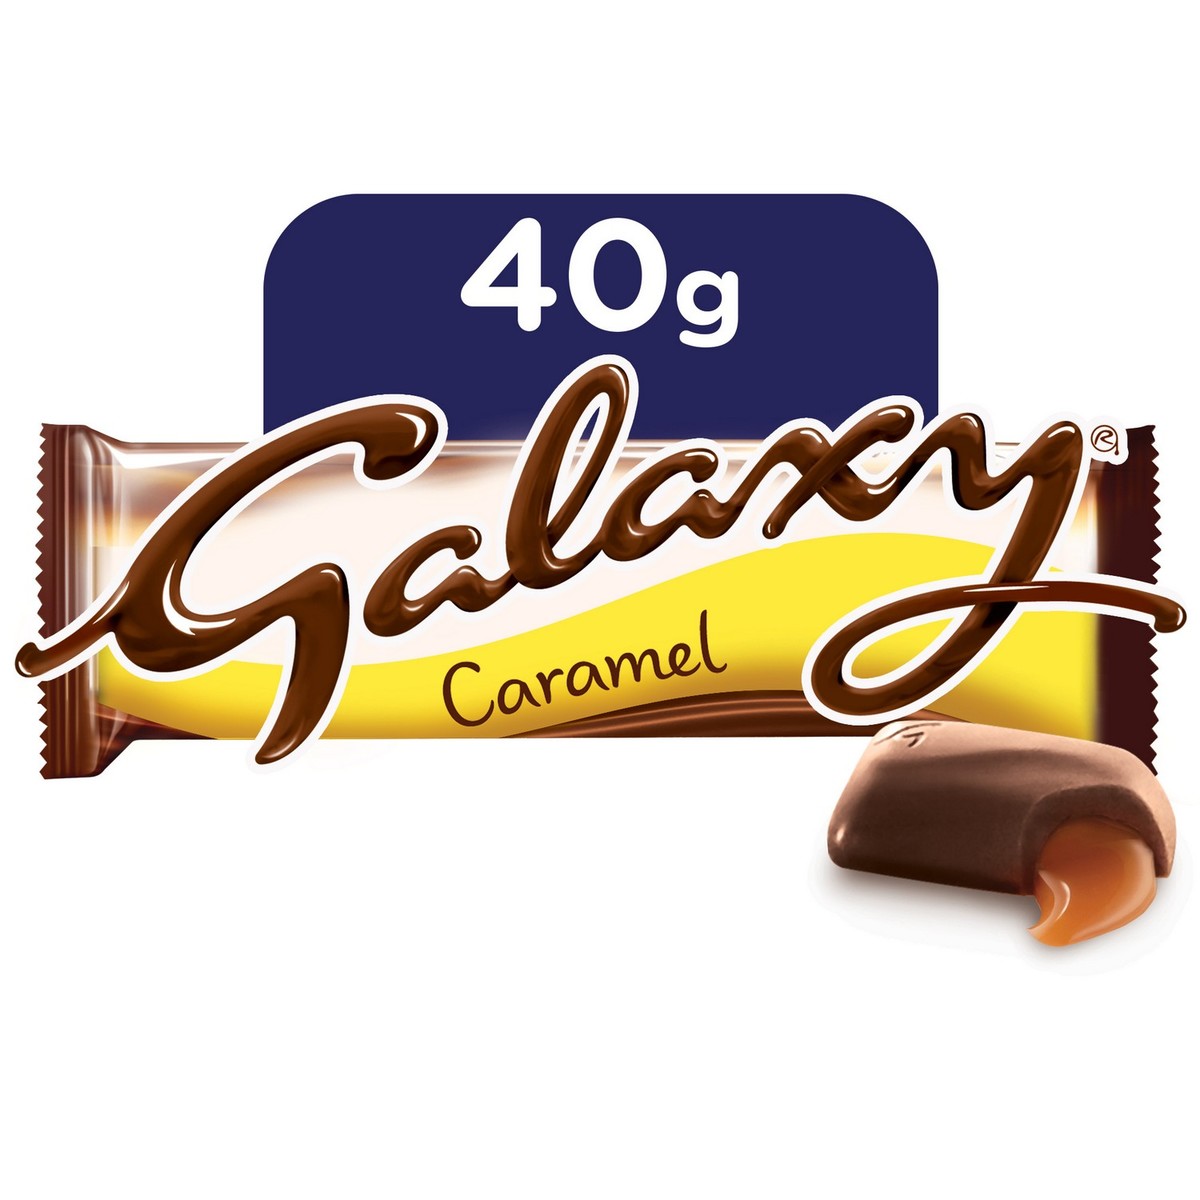 Galaxy® Caramel Pie